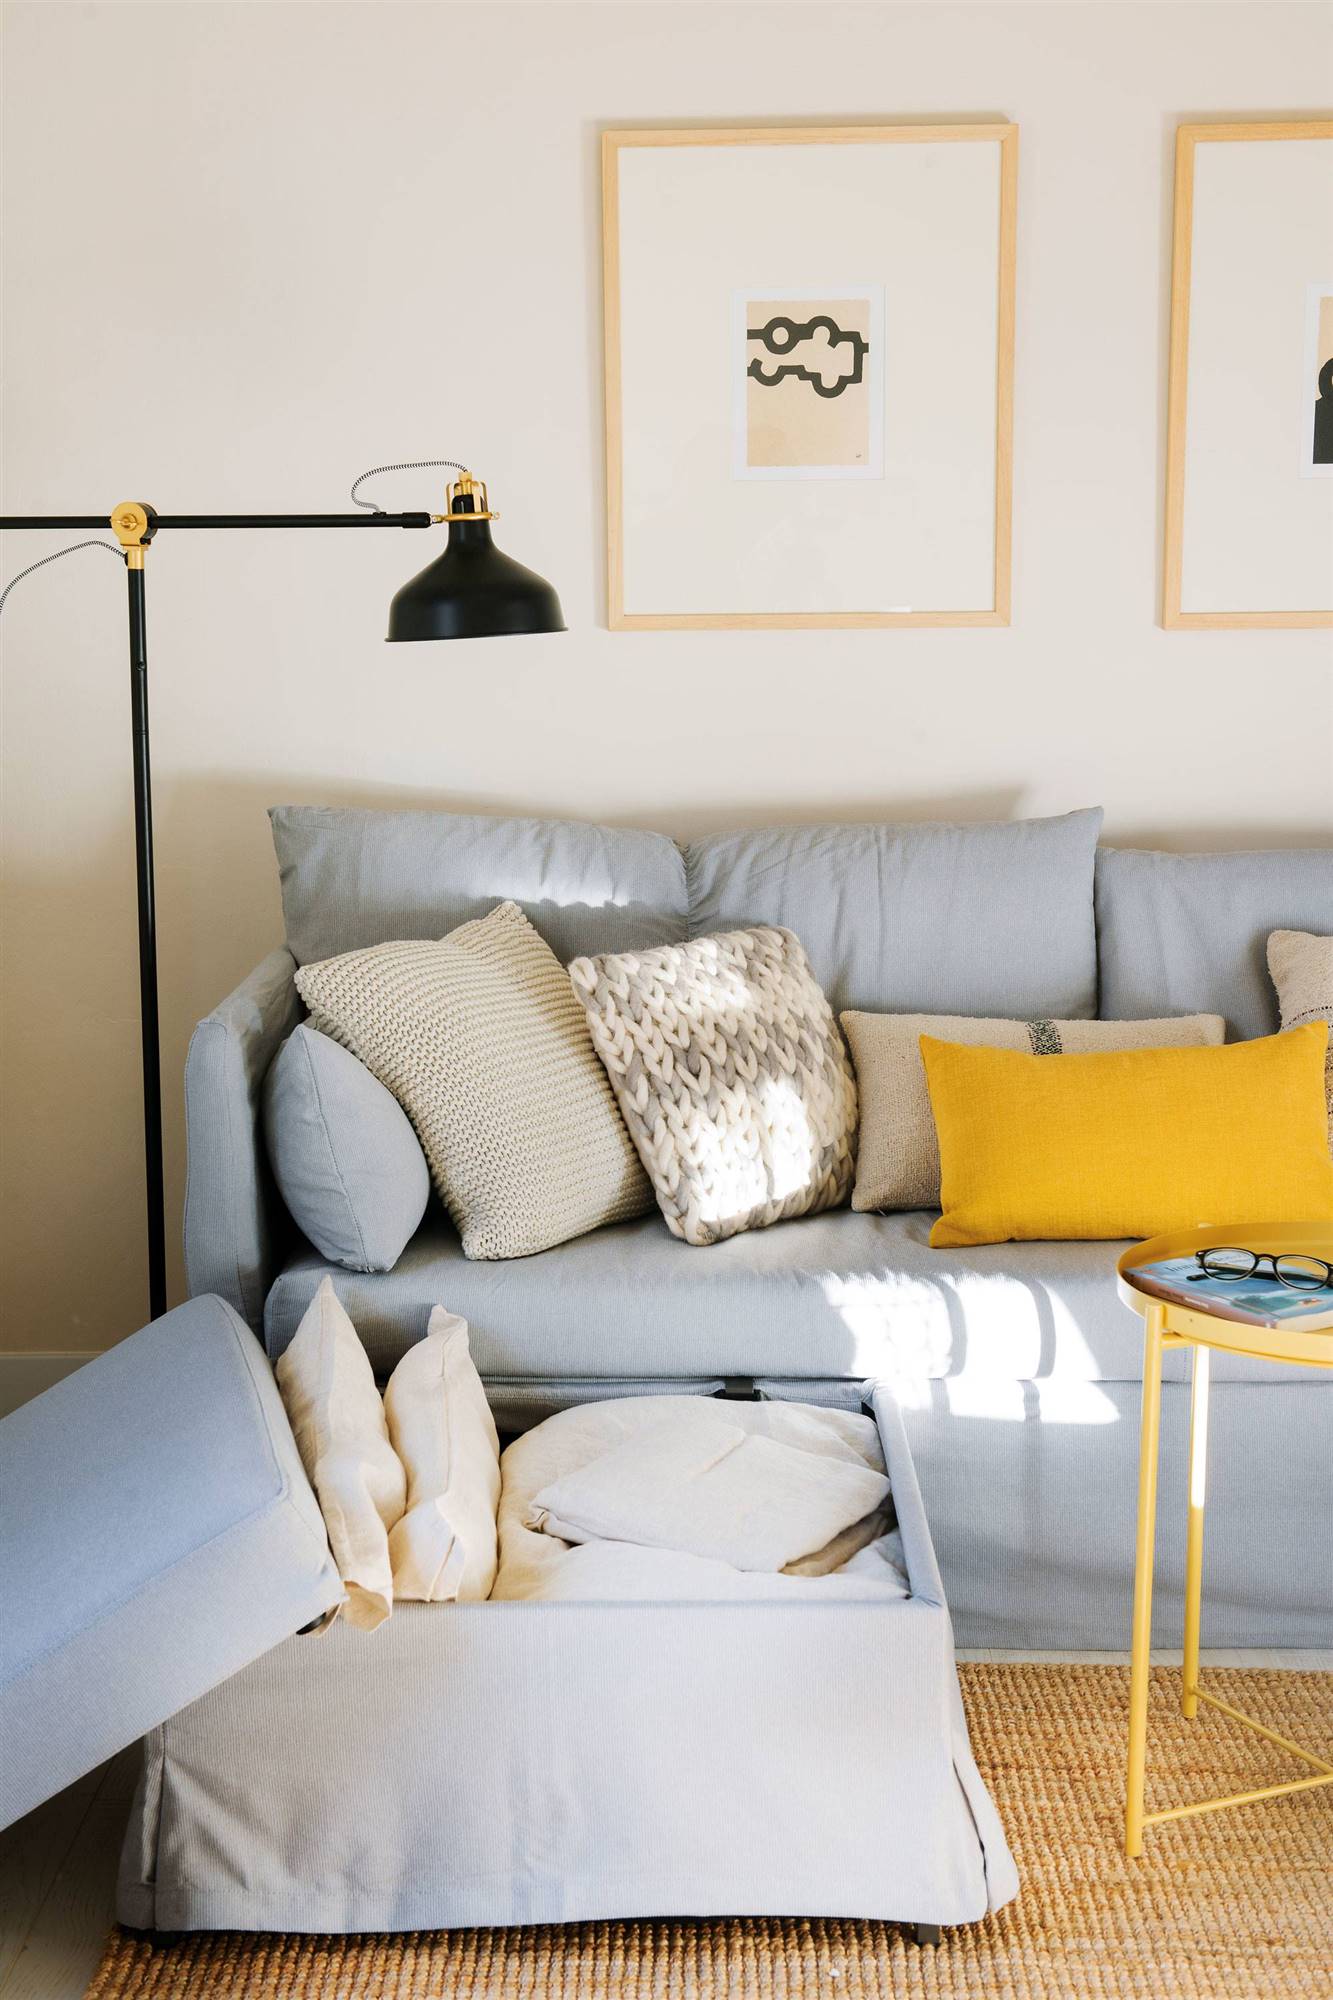 Cómo elegir el mejor sofá cama para descansar óptimamente?